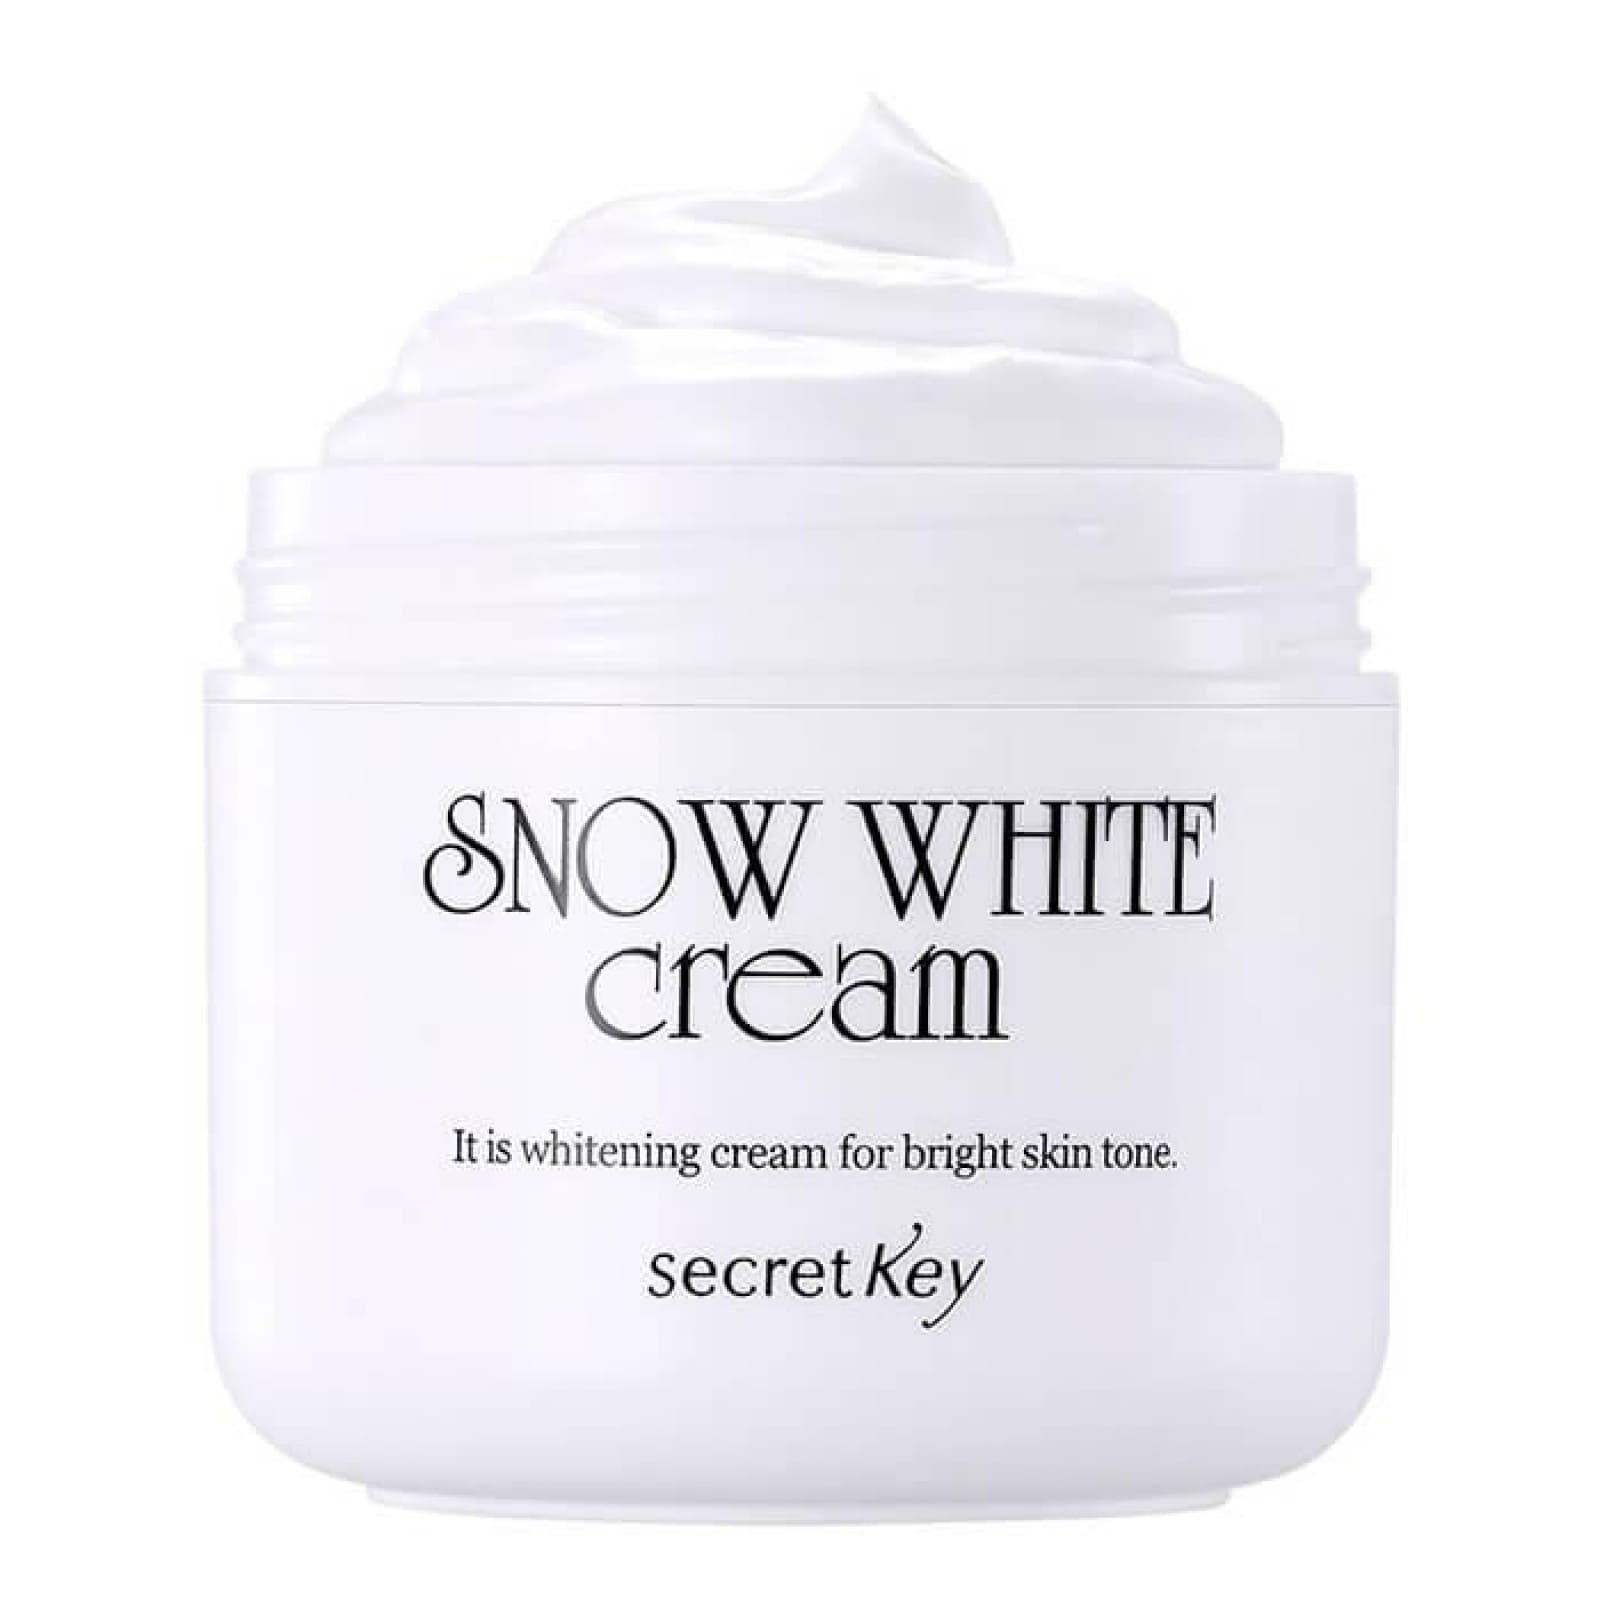 Secret Key Cremă inălbitoare pentru față Snow White Cream, 50 ml